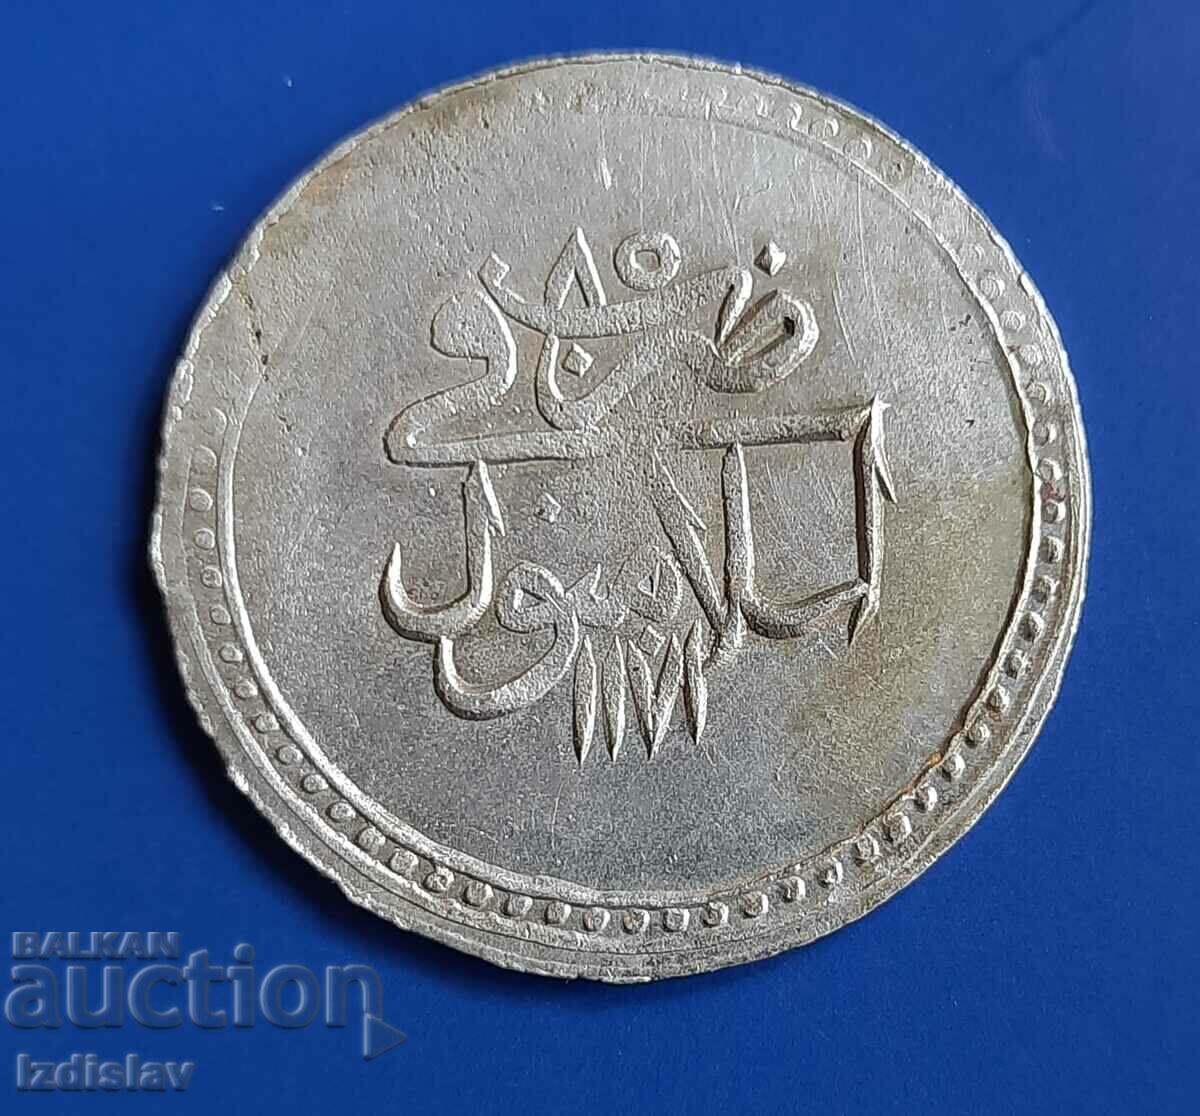 Monedă mare otomană de argint veche.